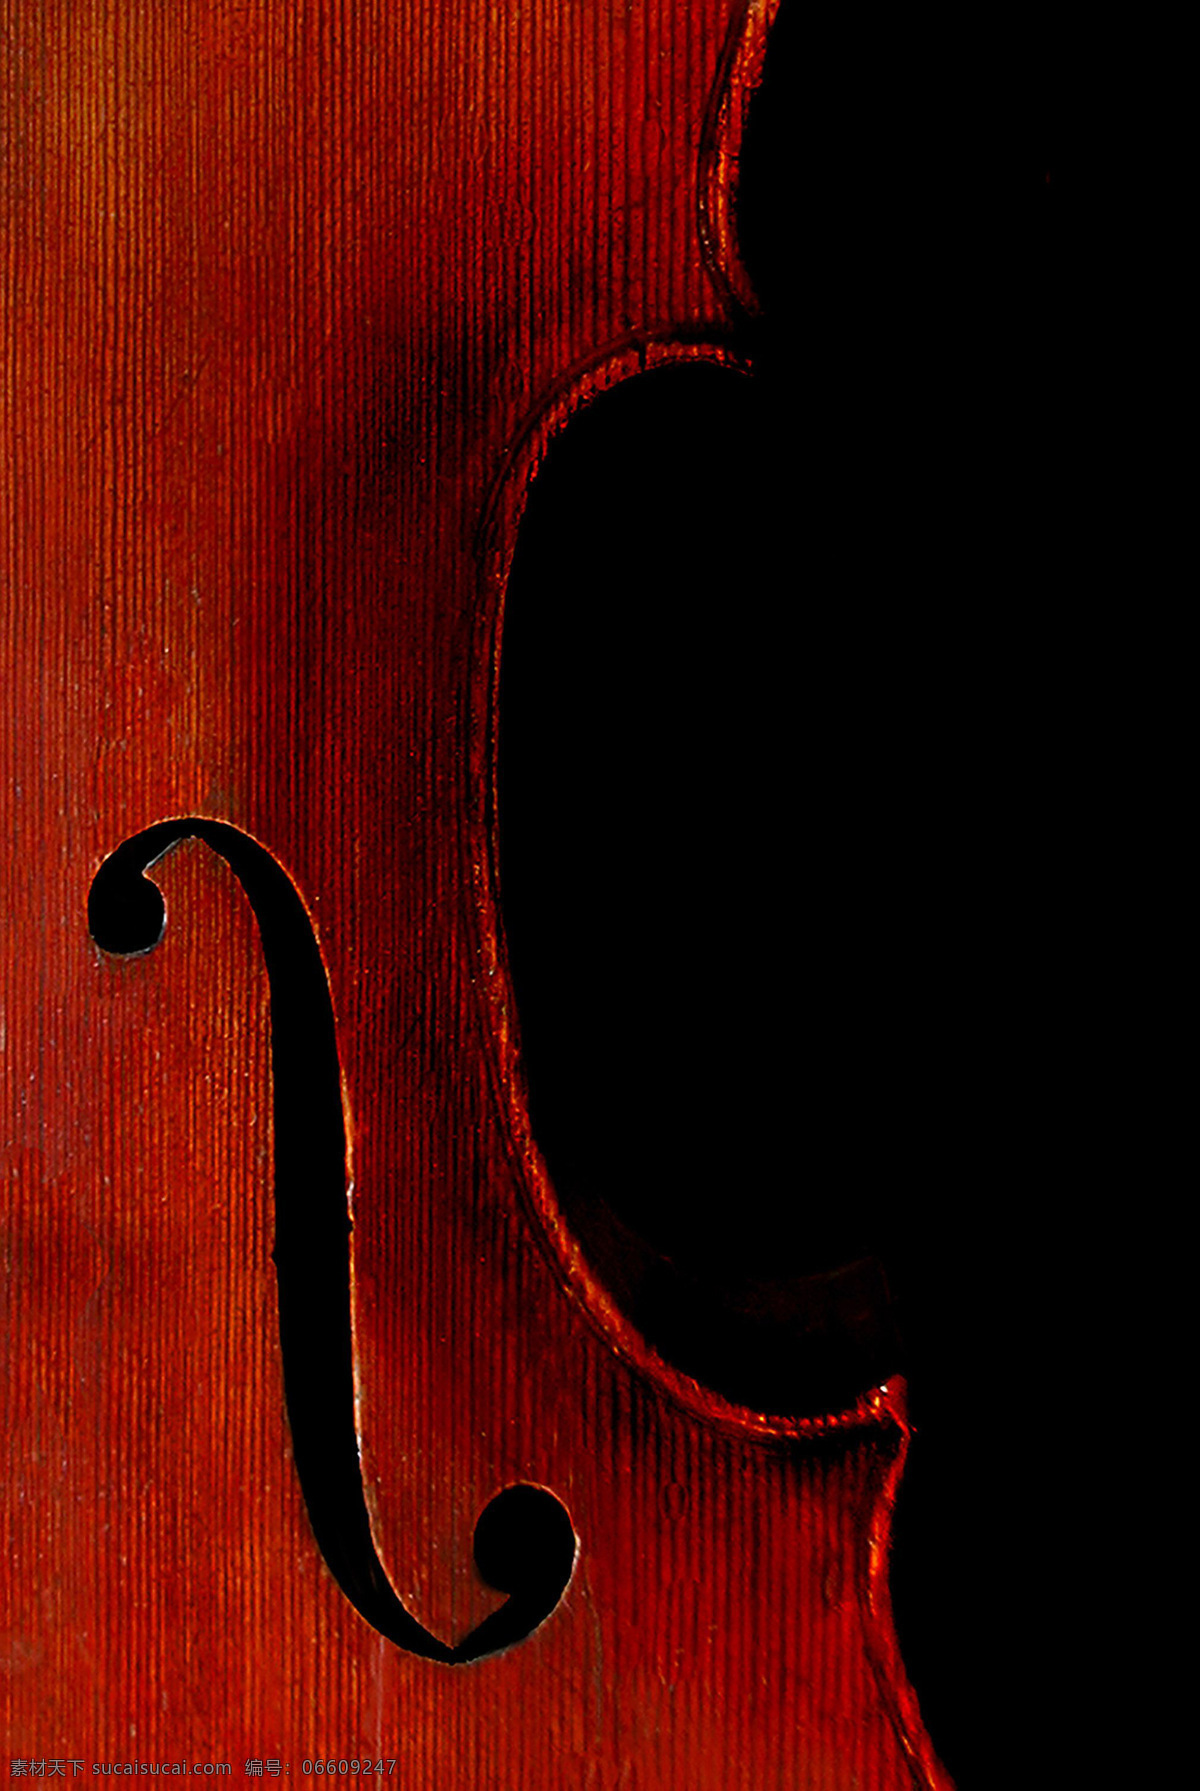 小提琴琴身 音乐 艺术 乐器 弦乐器 小提琴 文化艺术 舞蹈音乐 摄影图库